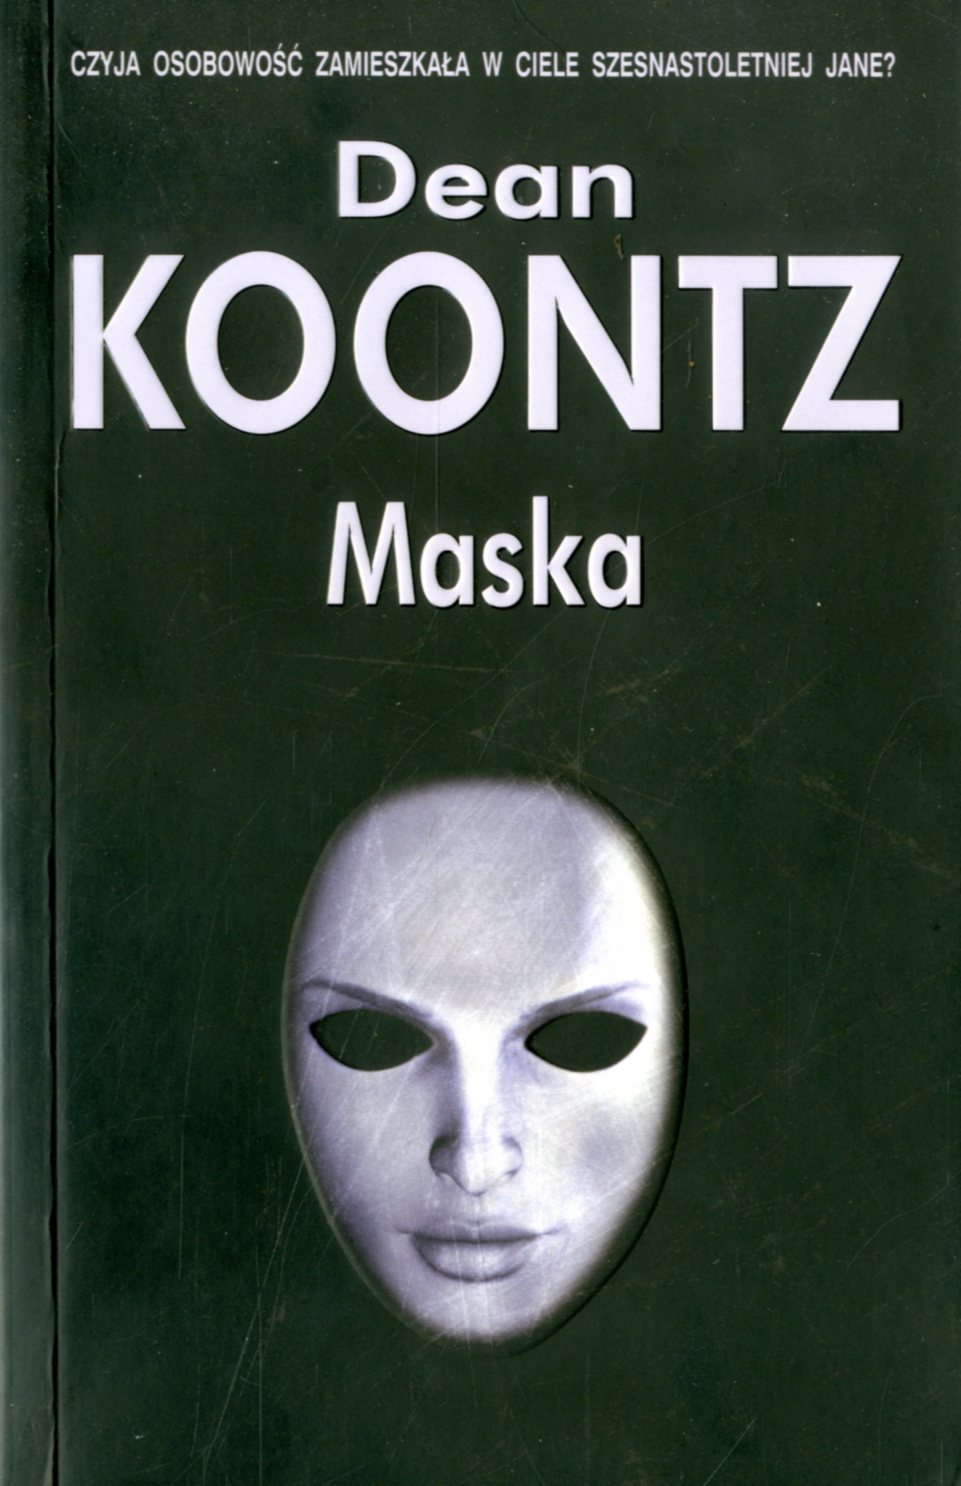 Книга про маски. Книга с маской на обложке.